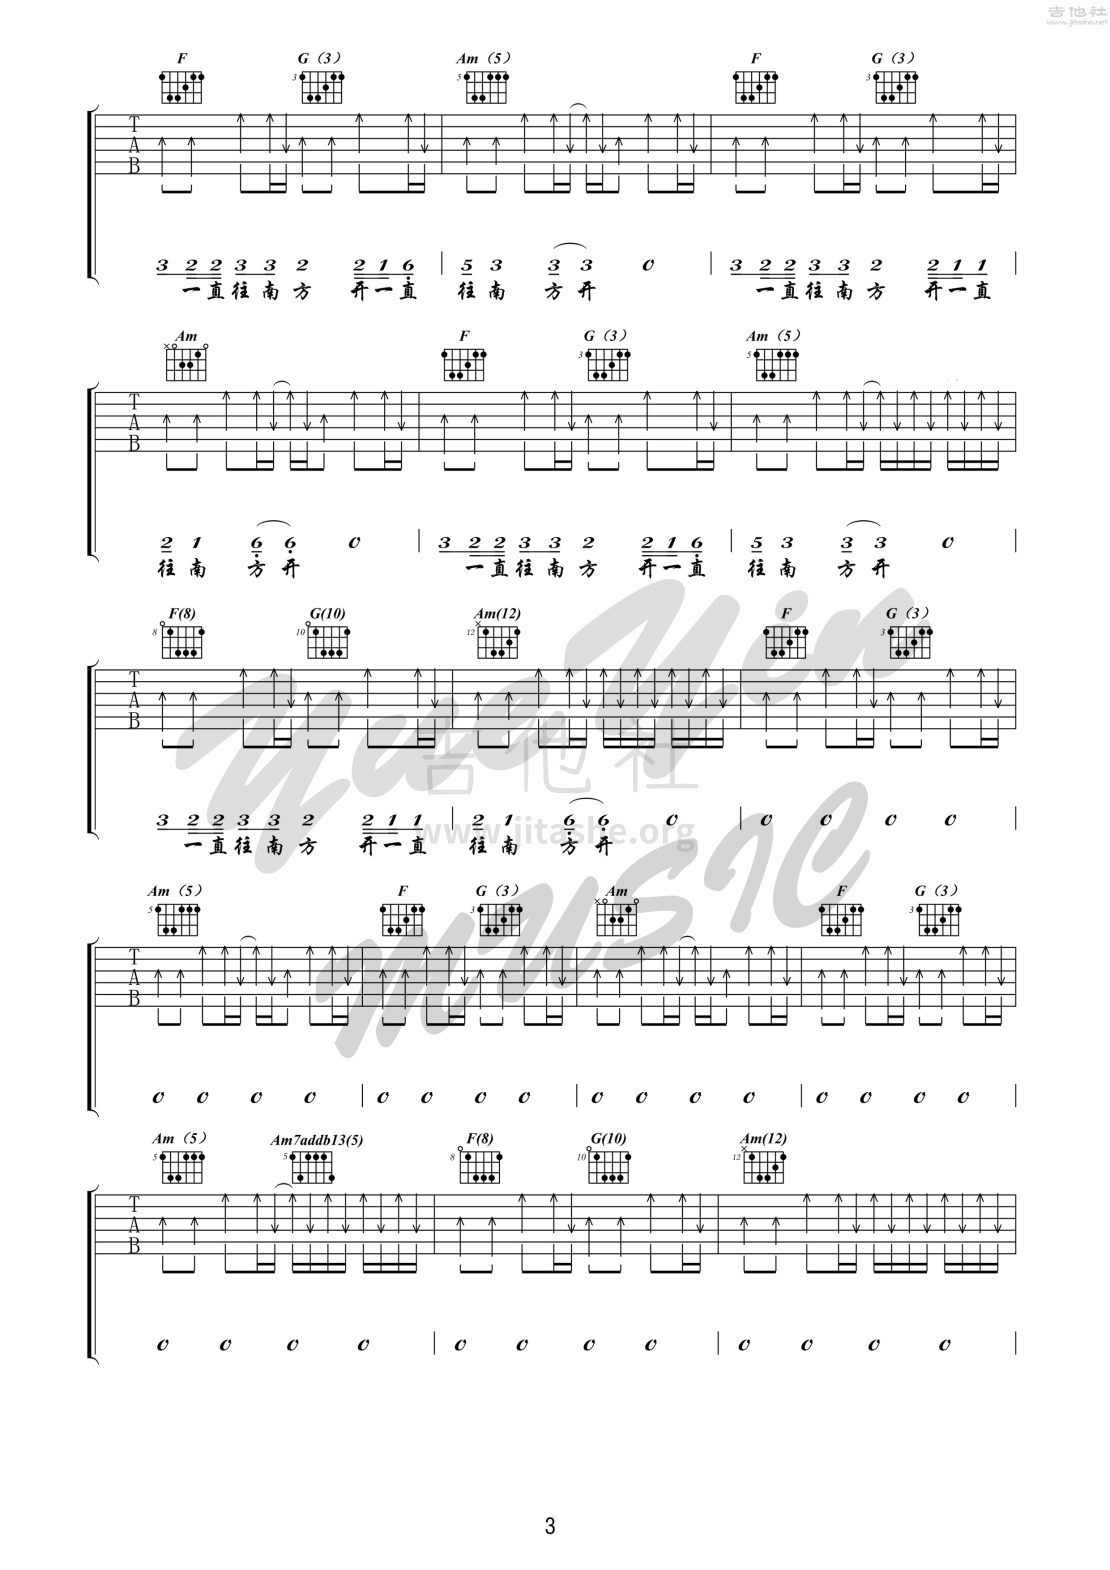 公路之歌 吉他 （悦音之声音乐工作室吉他教学系列 痛仰乐队系列 I ）吉他谱(图片谱,弹唱,公路之歌)_痛苦的信仰(痛仰)_公路之歌 3.jpg